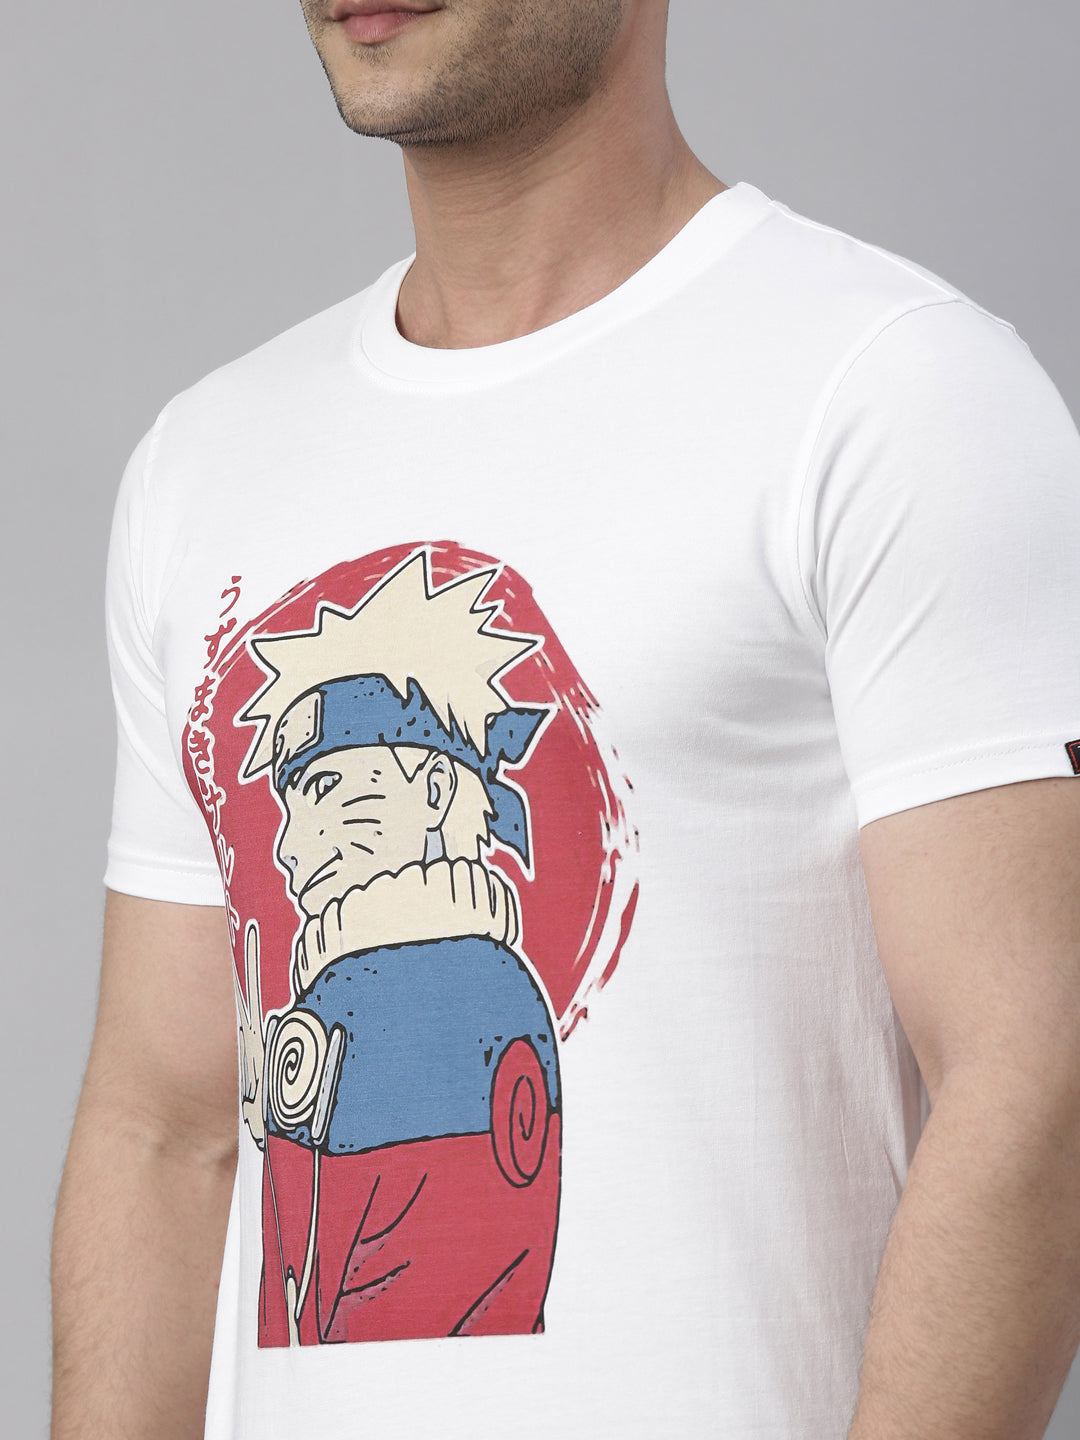 Smirky Naruto - Naruto Anime T-Shirt Graphic T-Shirts Bushirt   